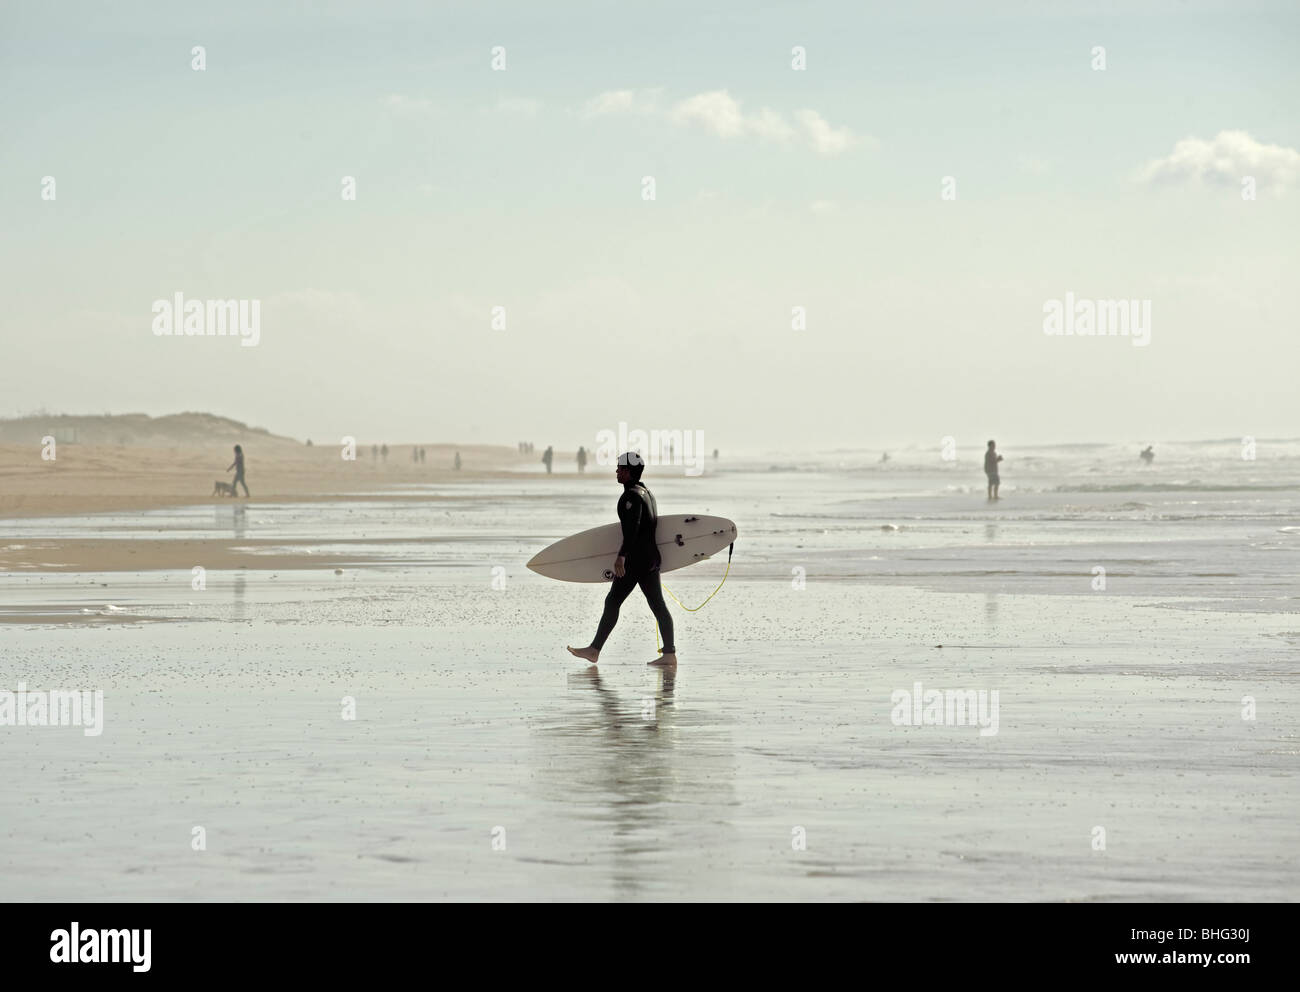 Surfer in el palmar Strand, Cádiz, Andalusien, Spanien Stockfoto